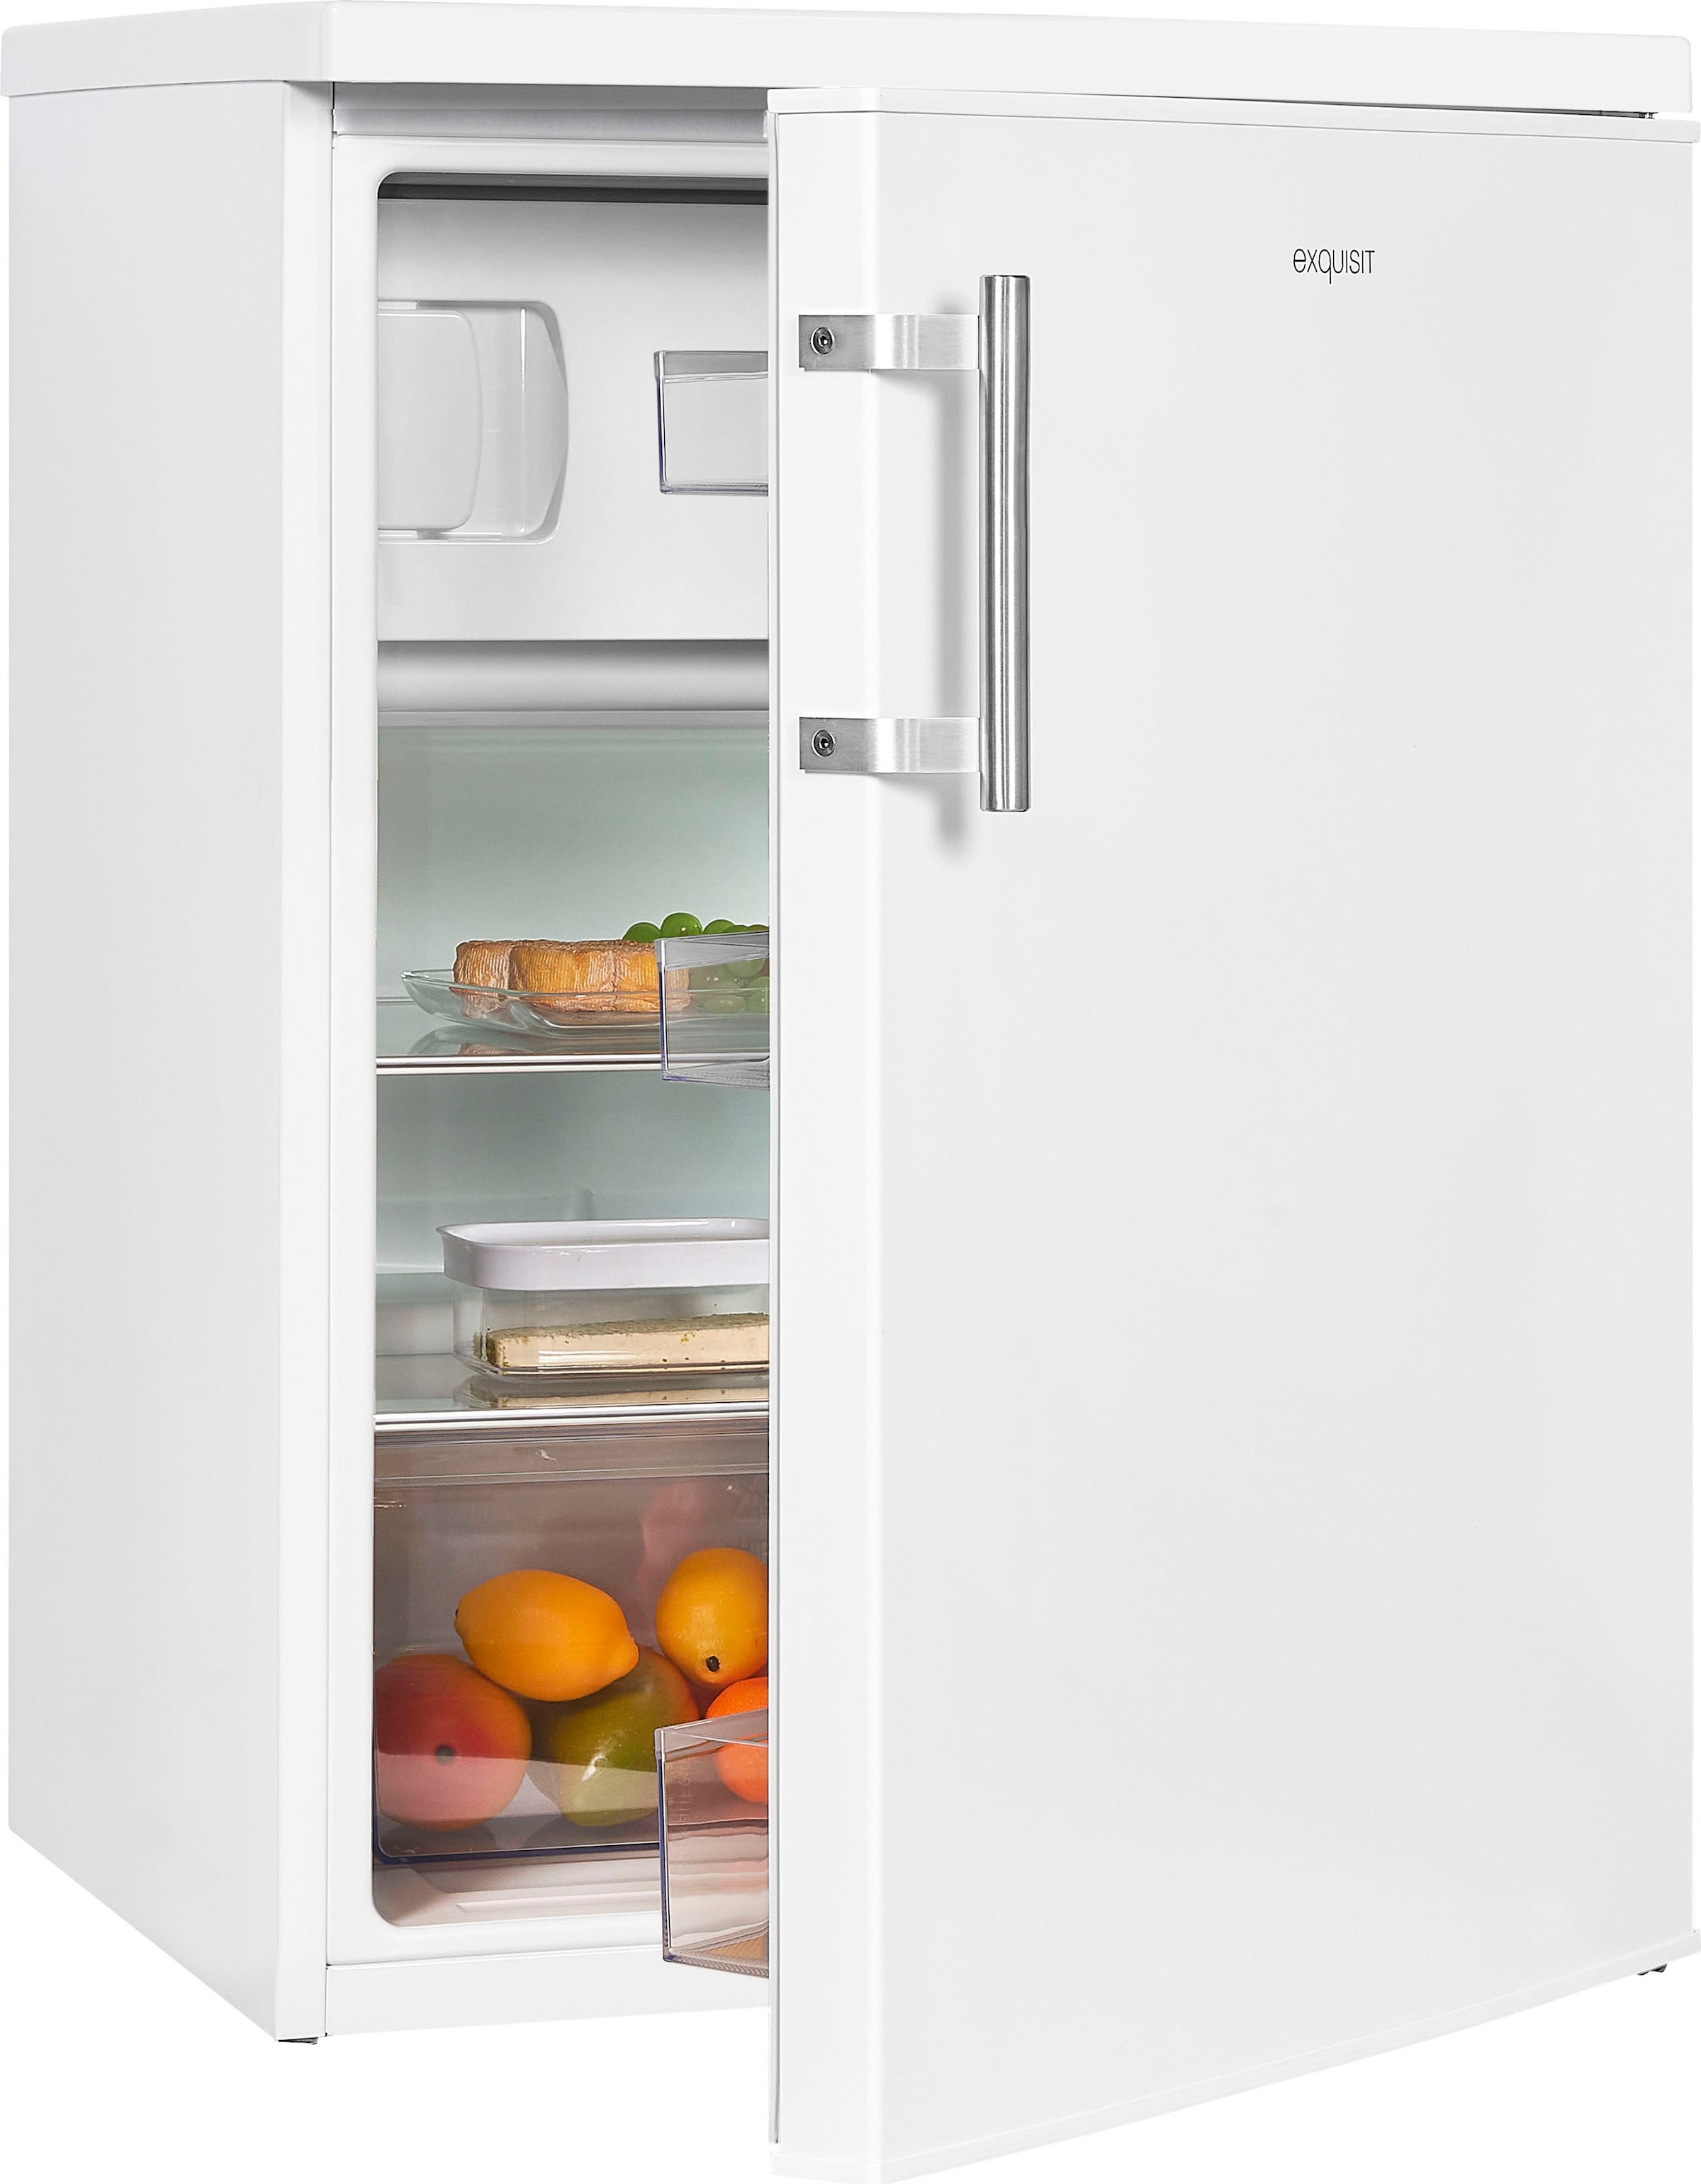 Exquisit Kühlschränke bequem bei OTTO